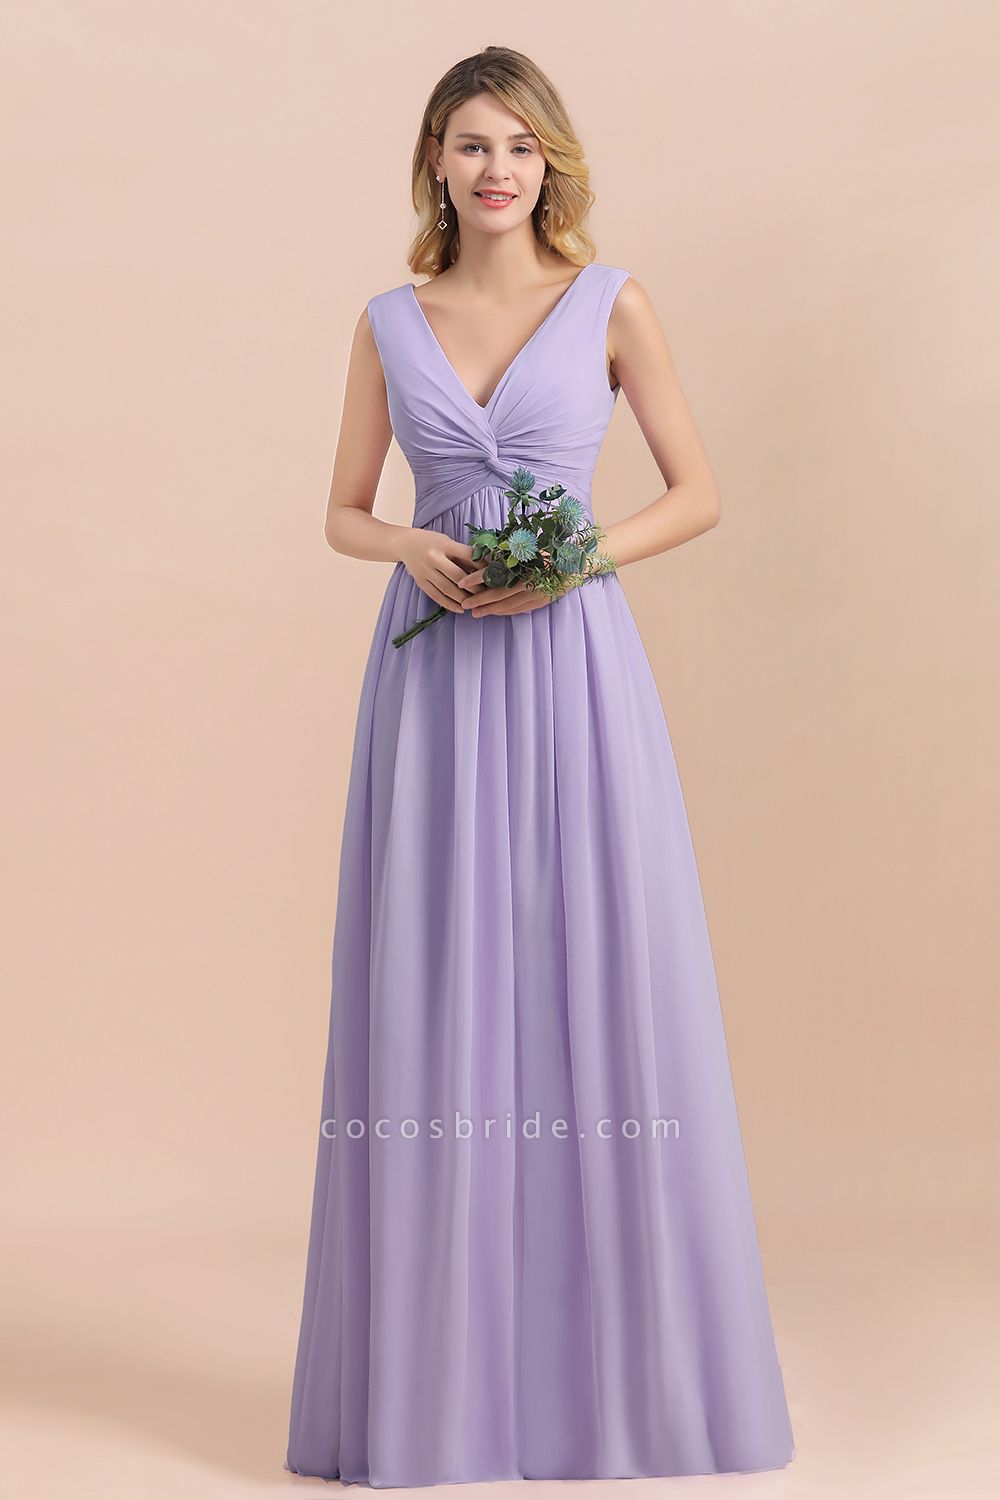 Lilac V-neck A-Line Evening Dress Sleeveless Chiffon Wide Straps Bridesmaid Dress